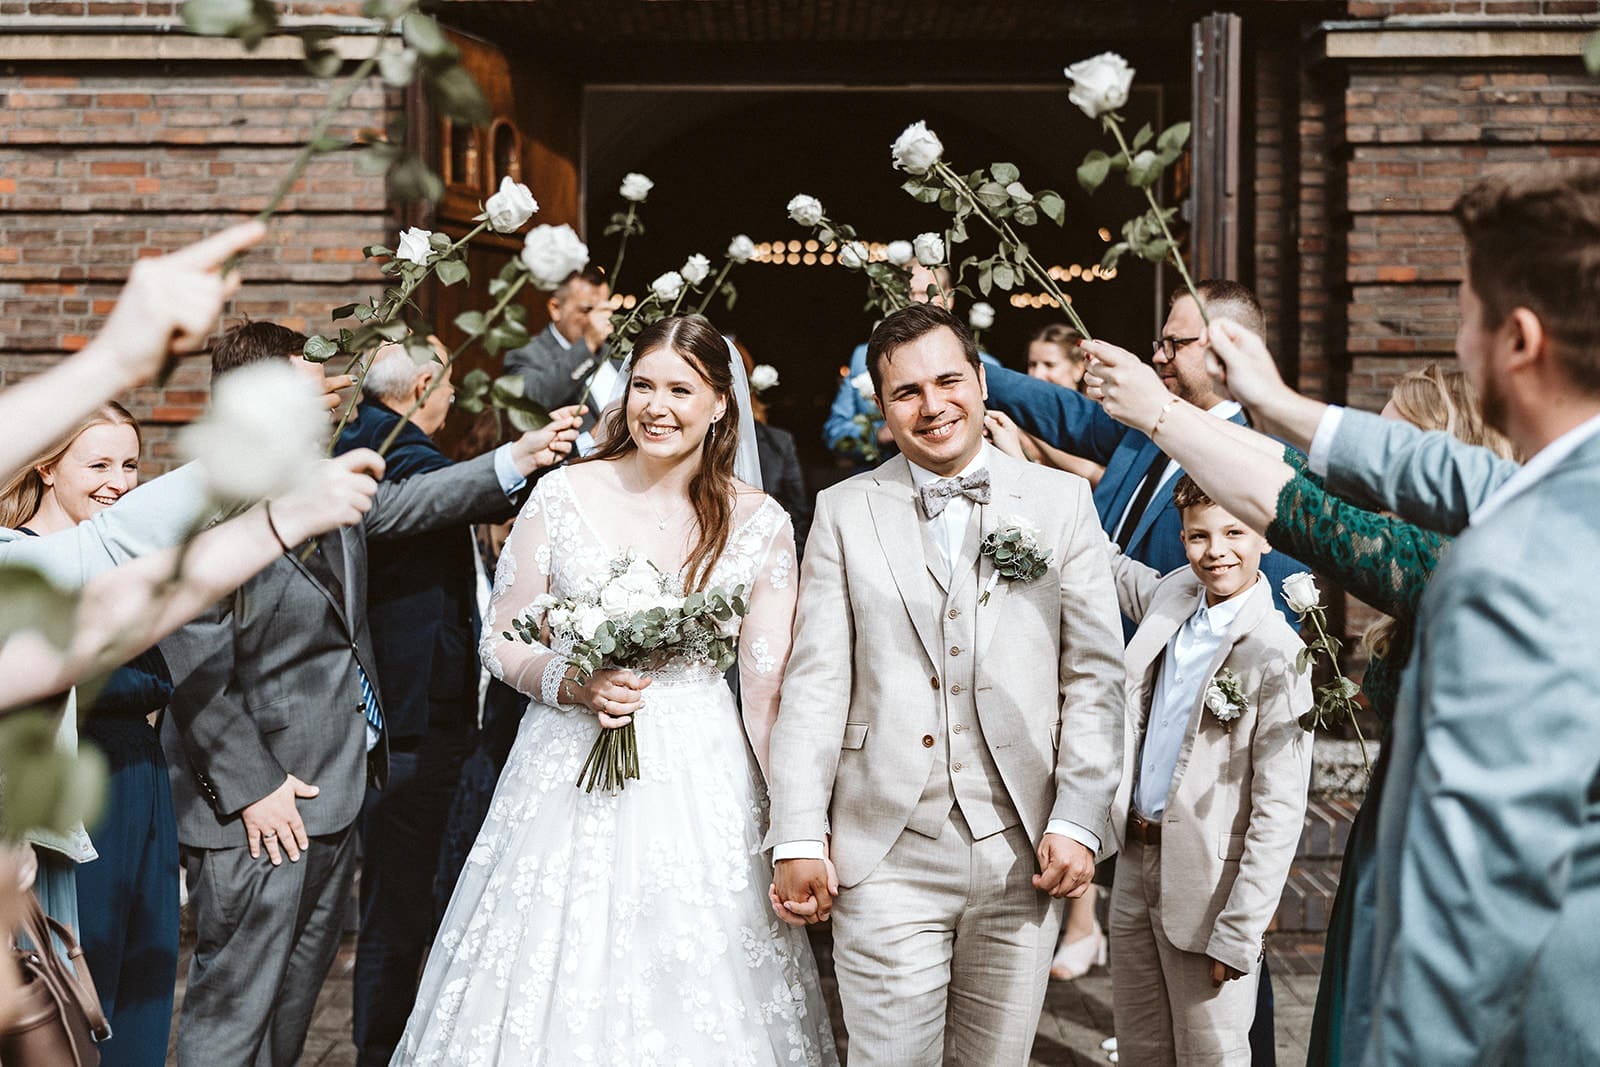 Hochzeit Heiraten Hochzeitsfotograf Dominik Neugebauer Portfolio - Brautpaar geht durch Spalier nach der kirchlichen Trauung. Hochzeitsgäste haben weiße Rosen in den Händen